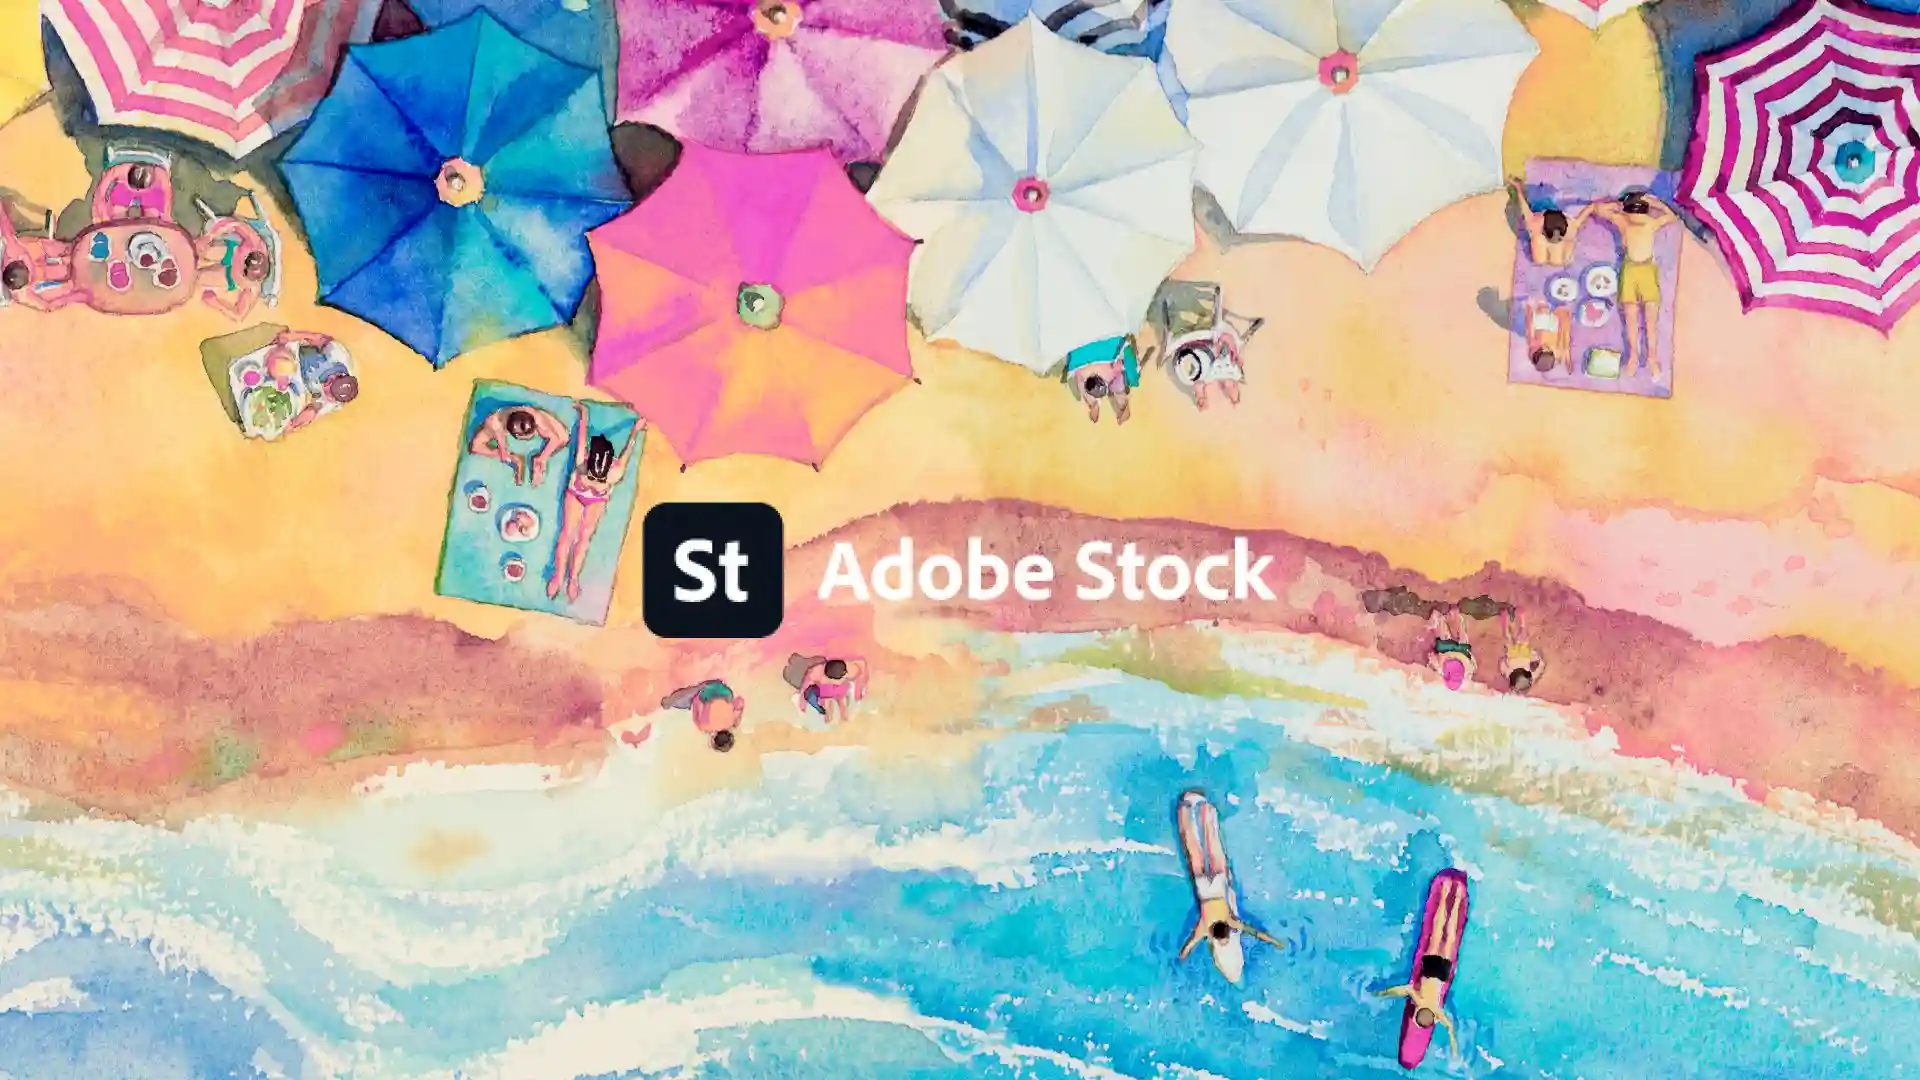 【超便利】Adobe Stockとは? 初月無料&利用する4のメリットを解説。